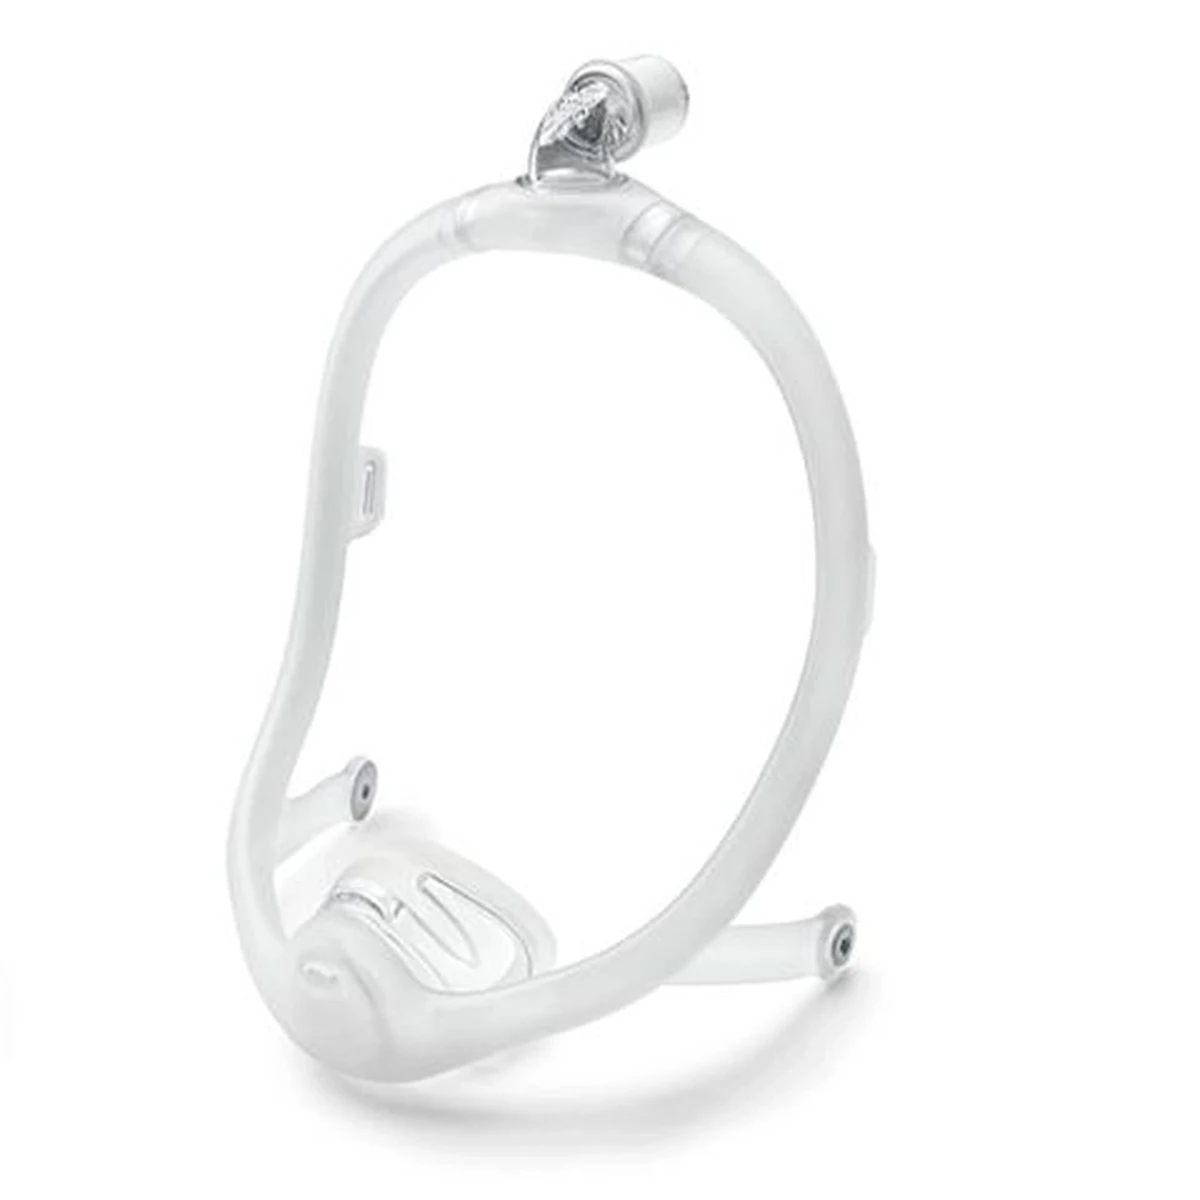 Foto do produto Máscara nasal DreamWisp - Philips Respironics